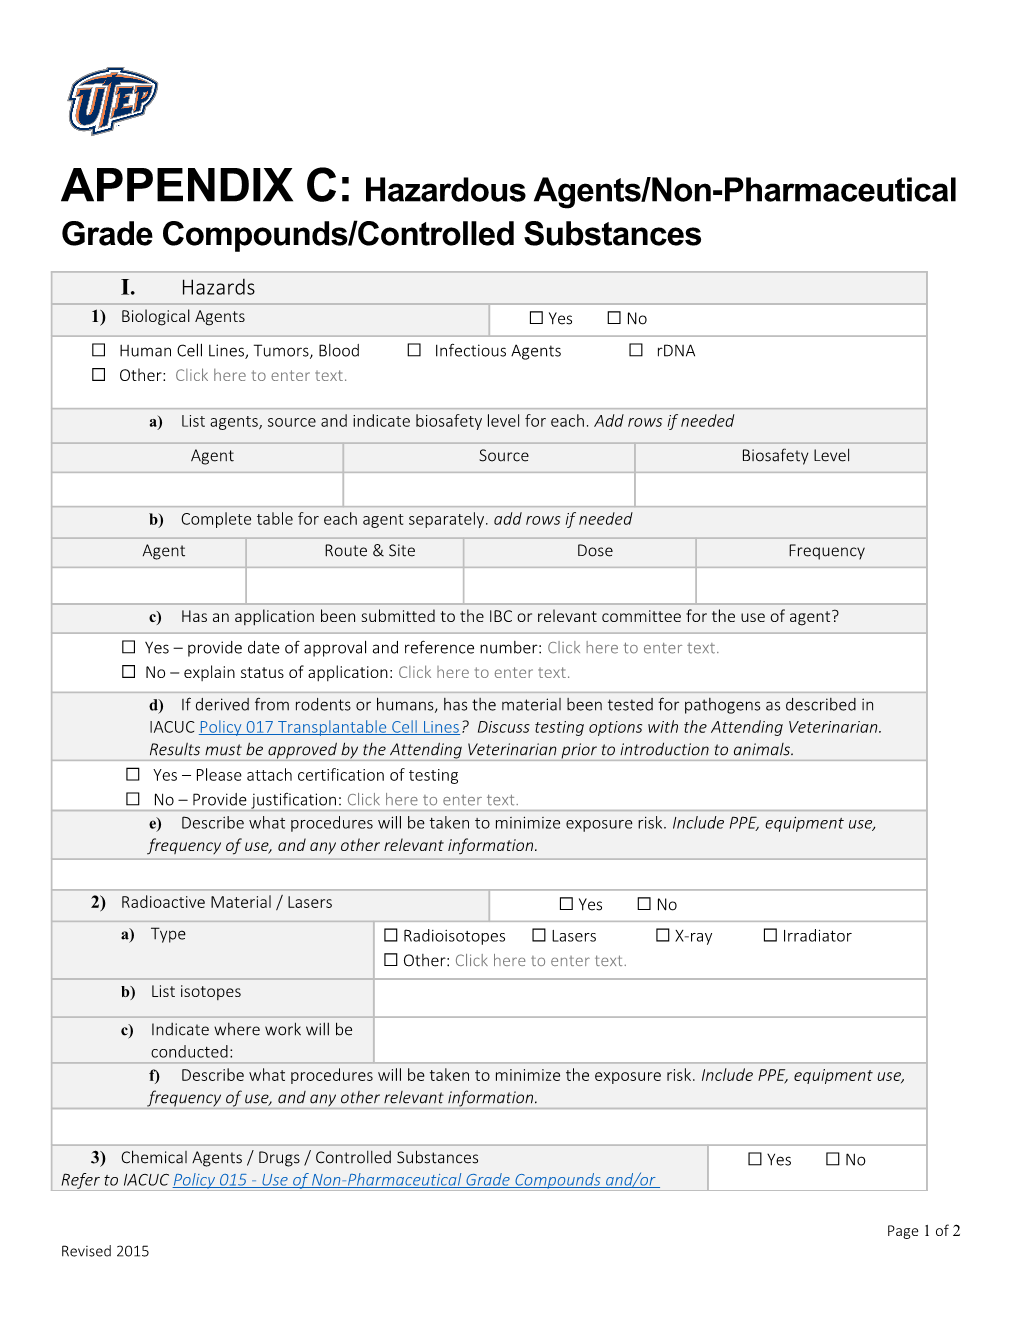 APPENDIX C:Hazardous Agents/Non-Pharmaceutical Grade Compounds/Controlled Substances